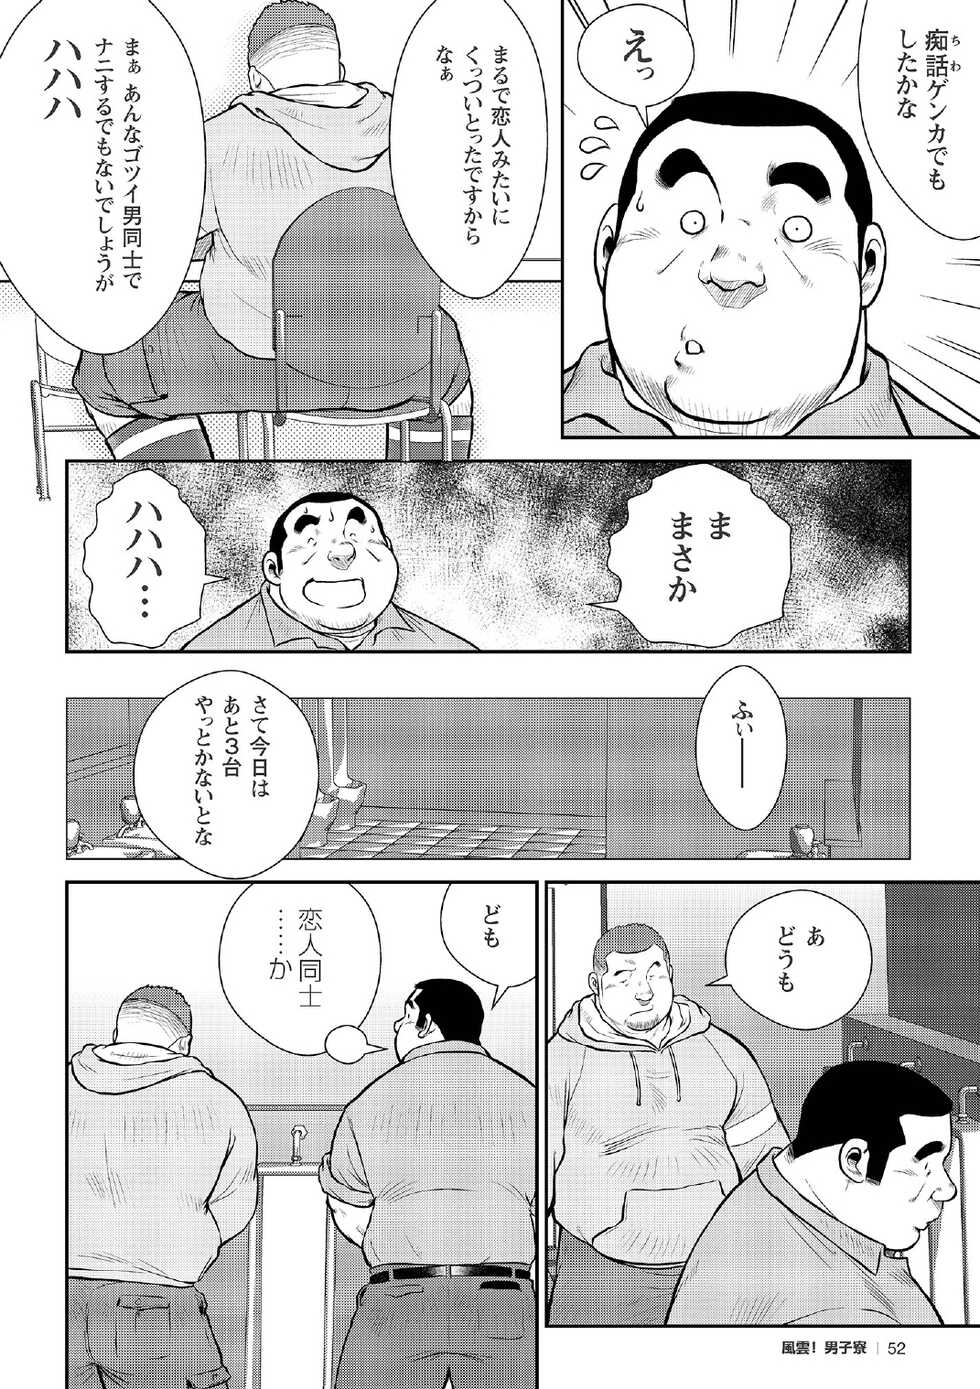 [Ebisubashi Seizou] Ebisubashi Seizou Tanpen Manga Shuu 2 Fuuun! Danshi Ryou [Bunsatsuban] PART 2 Bousou Hantou Taifuu Zensen Ch. 1 + Ch. 2 [Digital] - Page 30